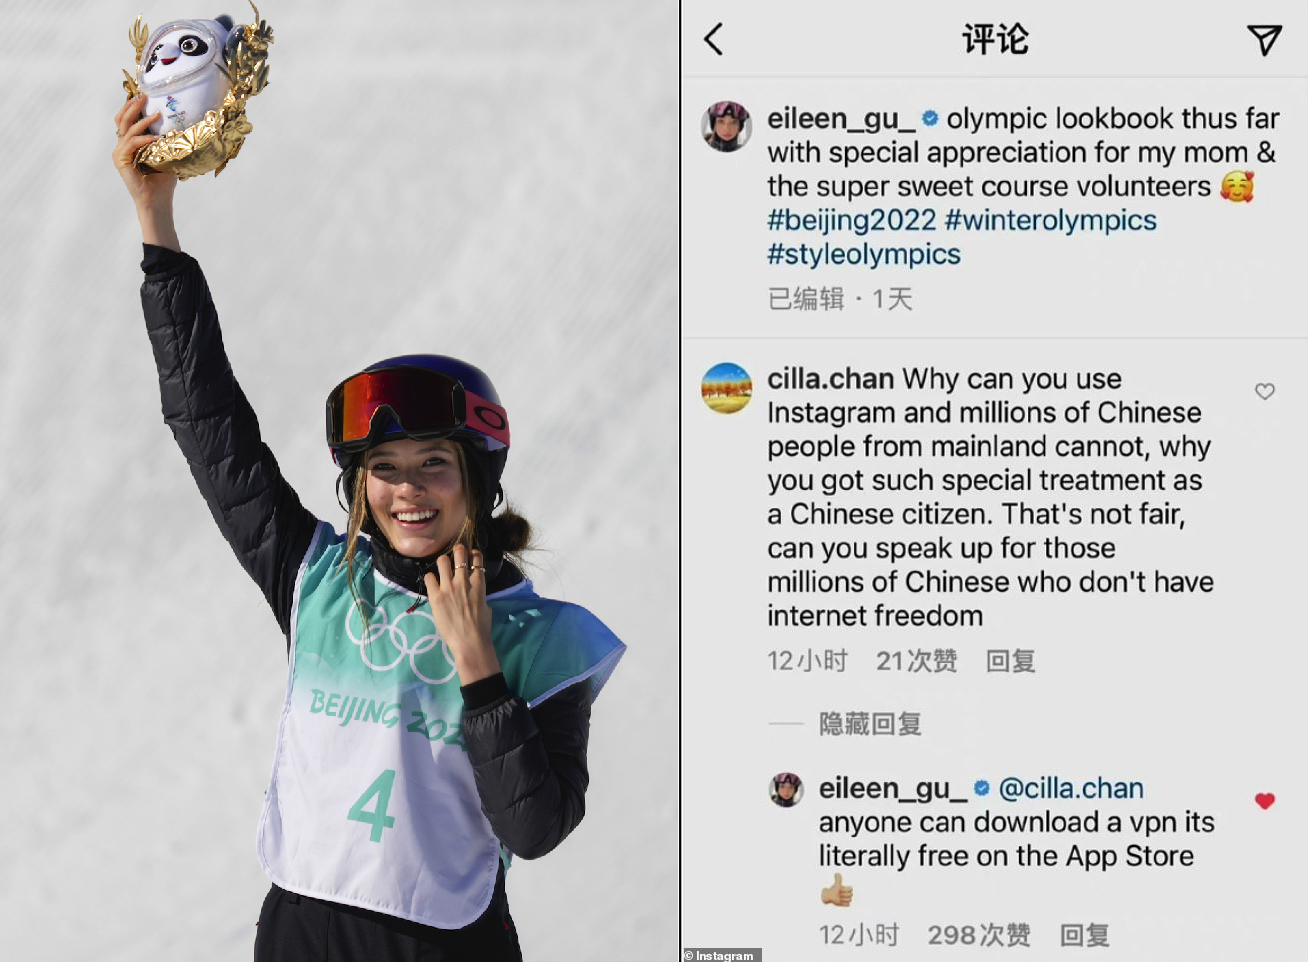 Eileen Gu Skirts Questions on Citizenship After Beijing Gold Medal